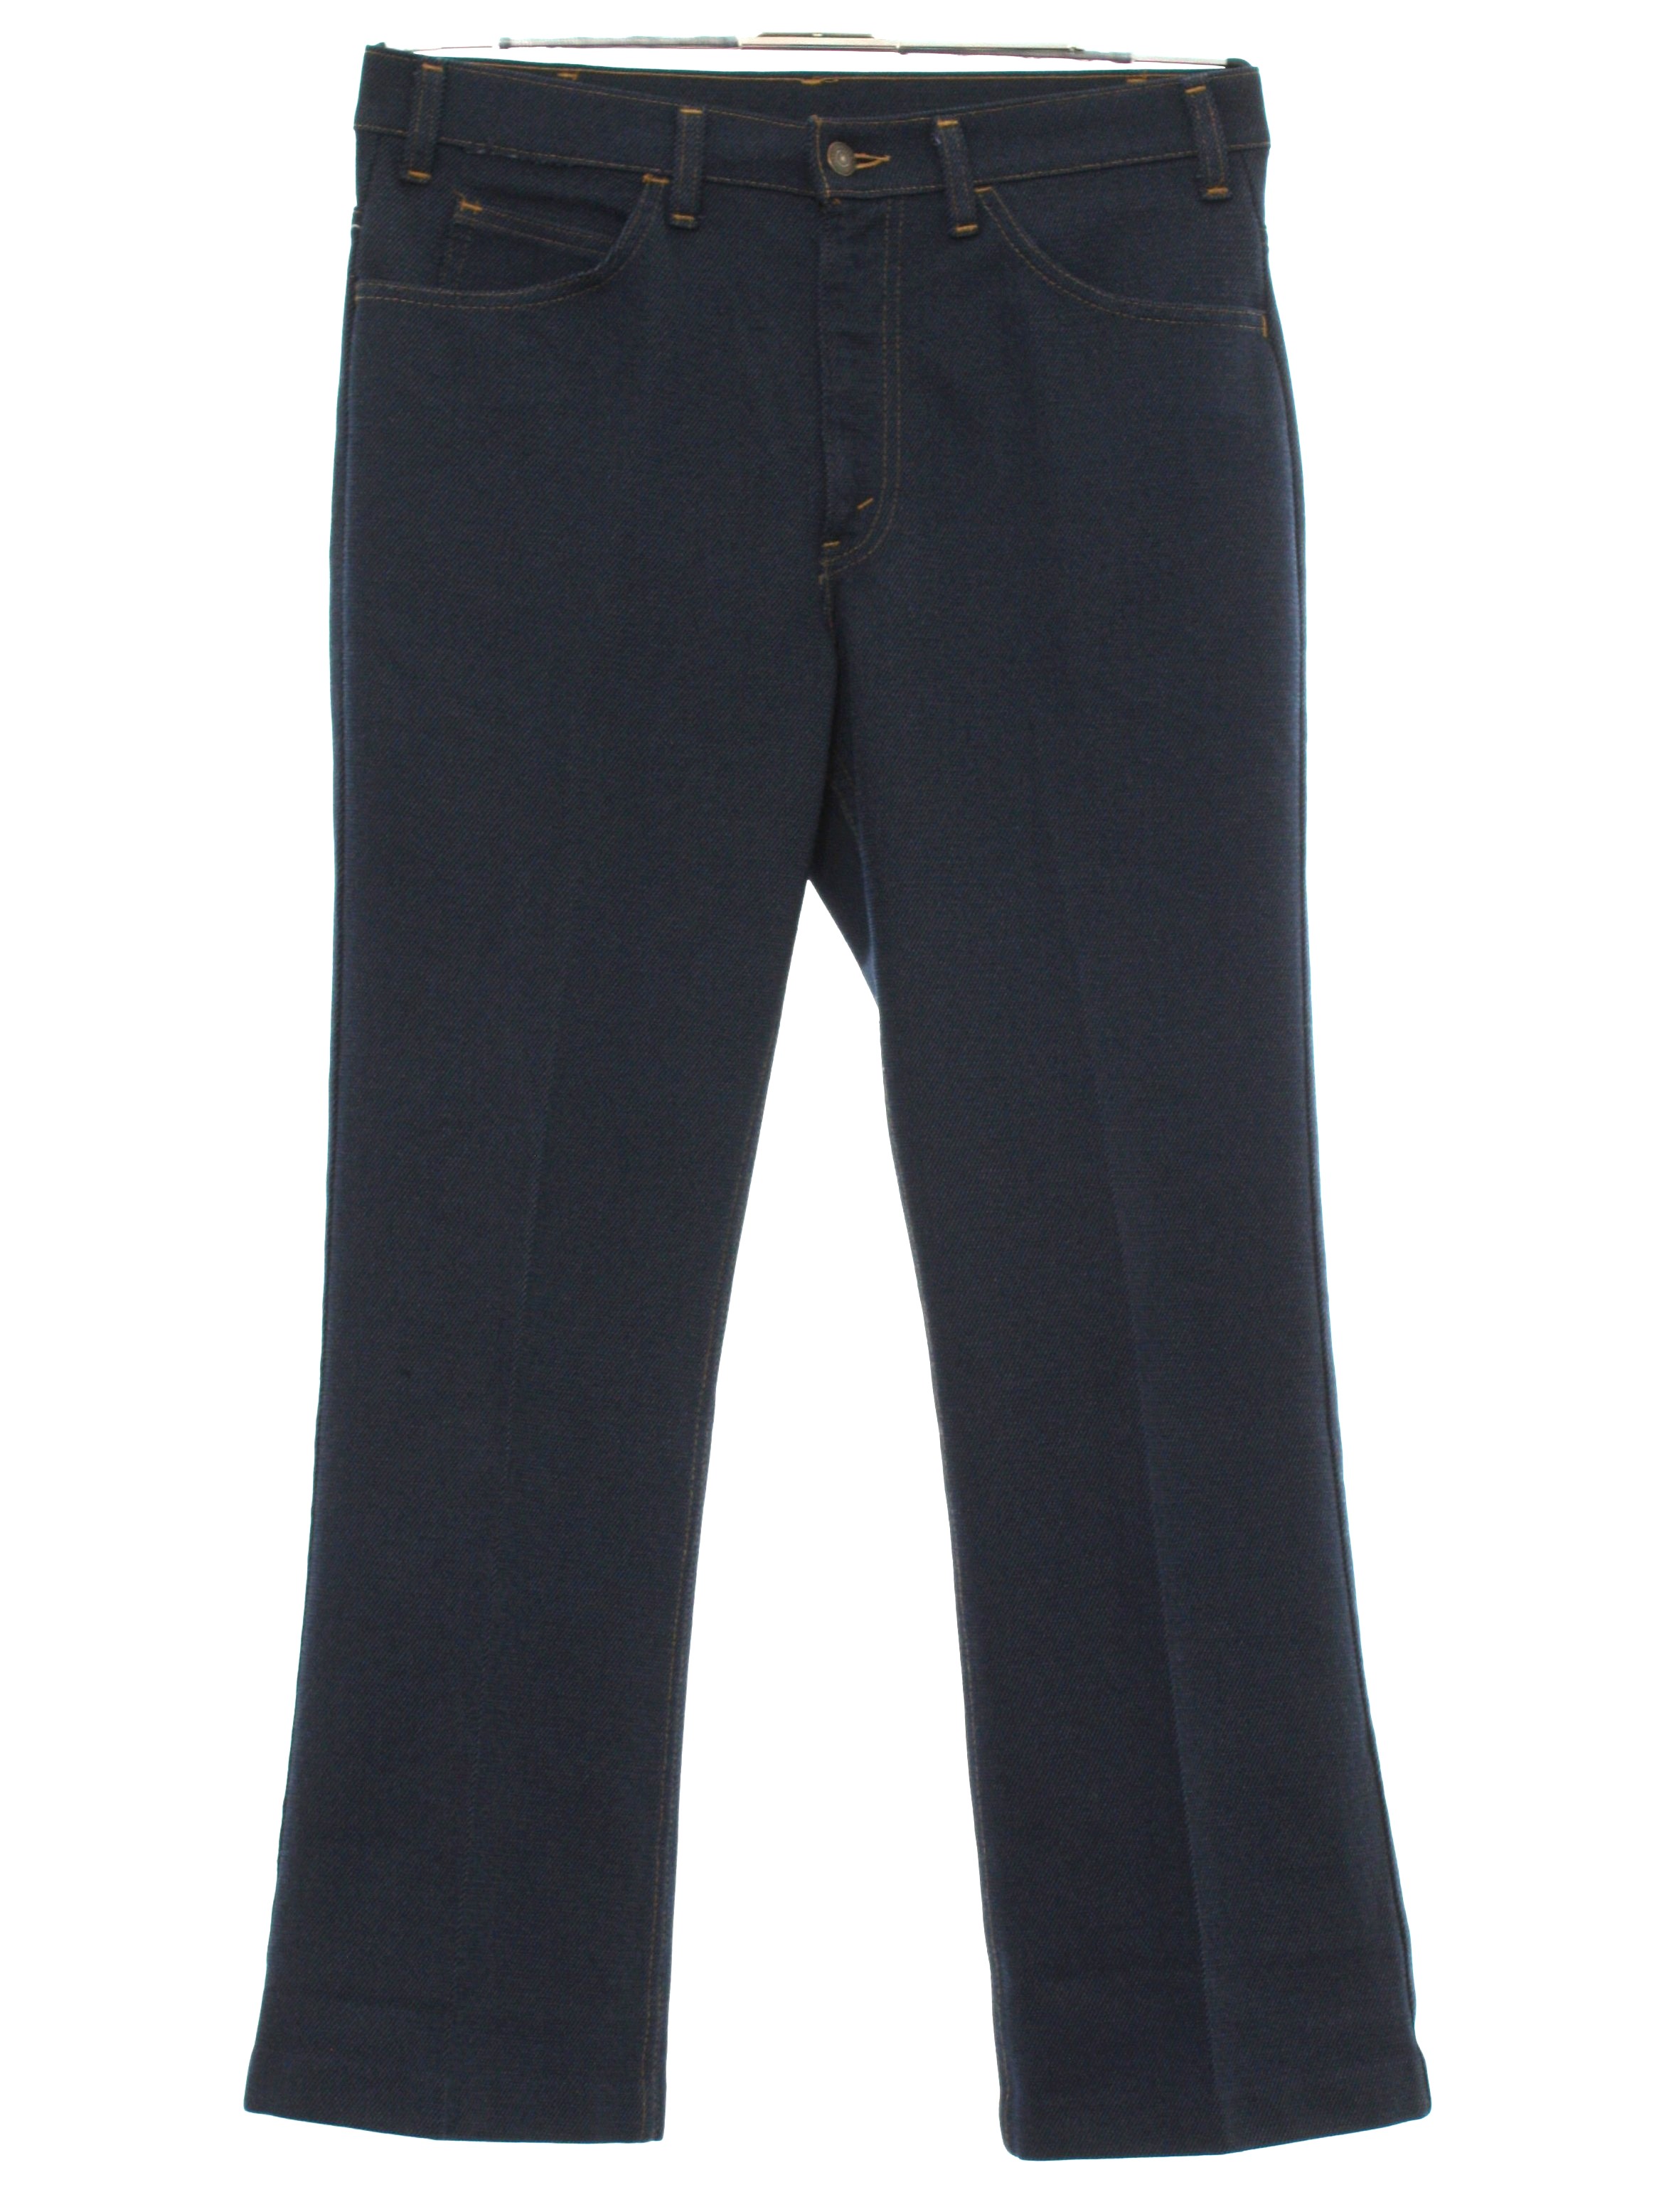 70's Vintage Flared Pants / Flares: 70s -Levis- Mens dark blue denim ...